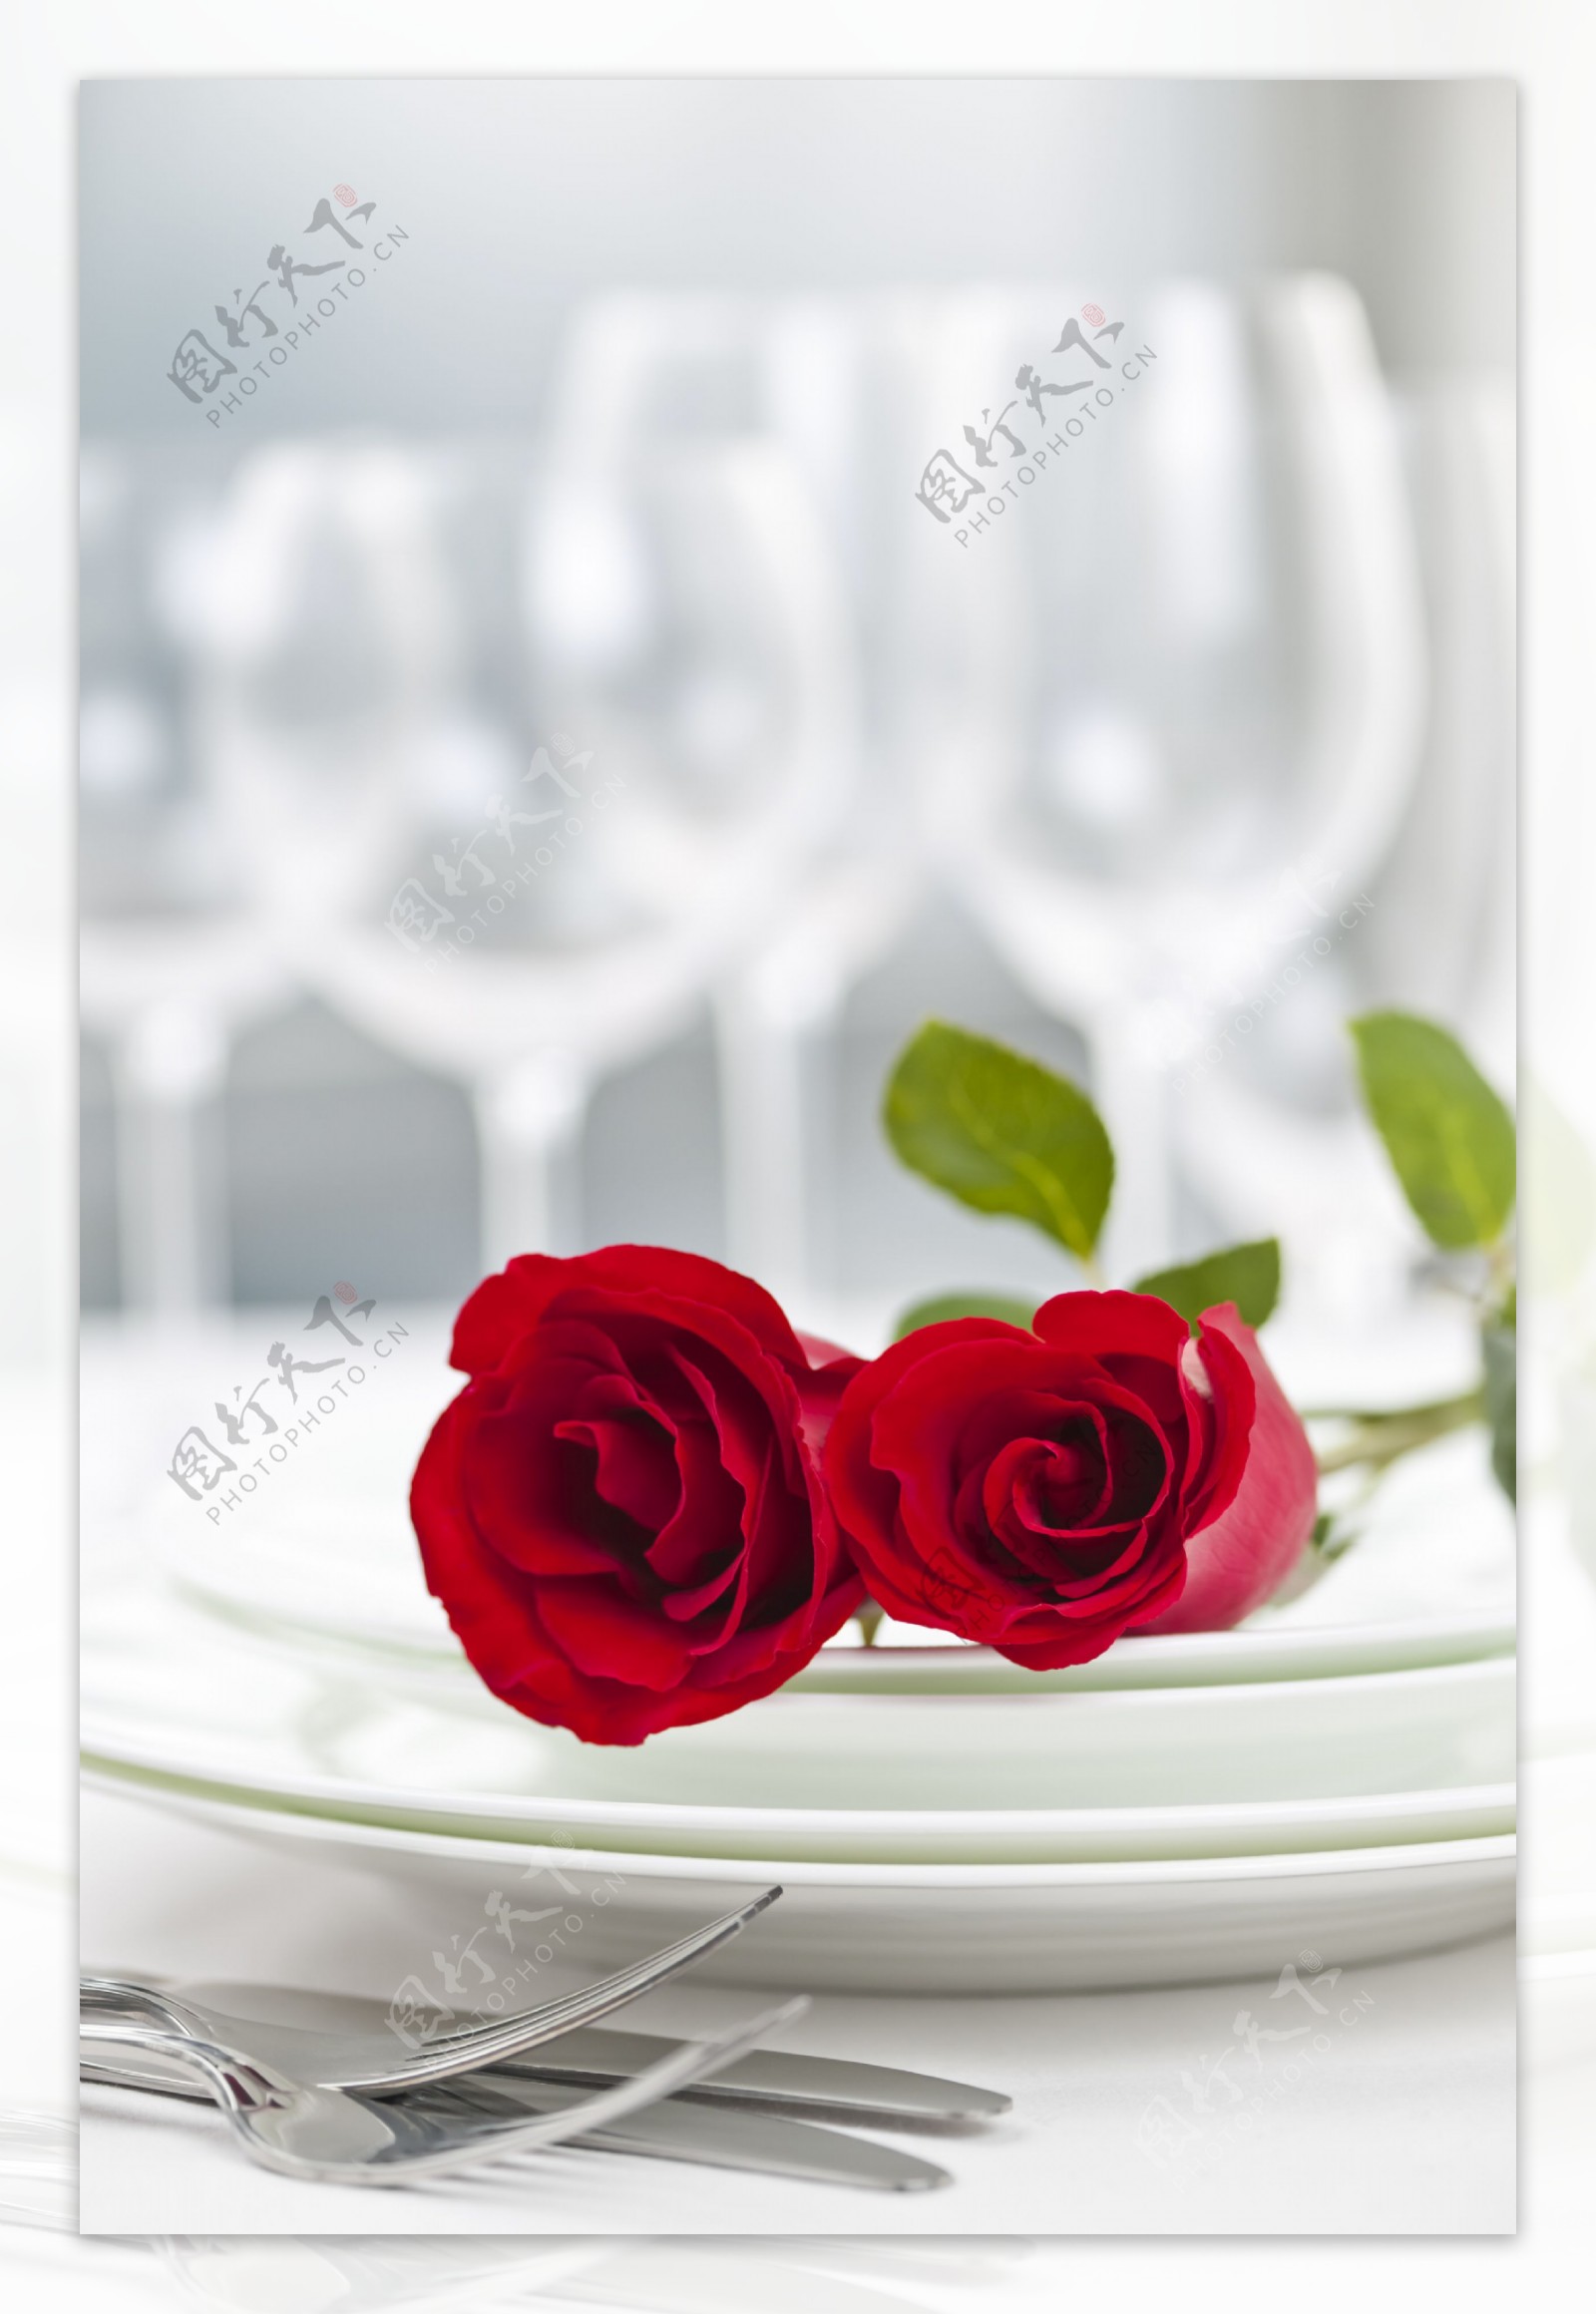 餐具里的红玫瑰图片